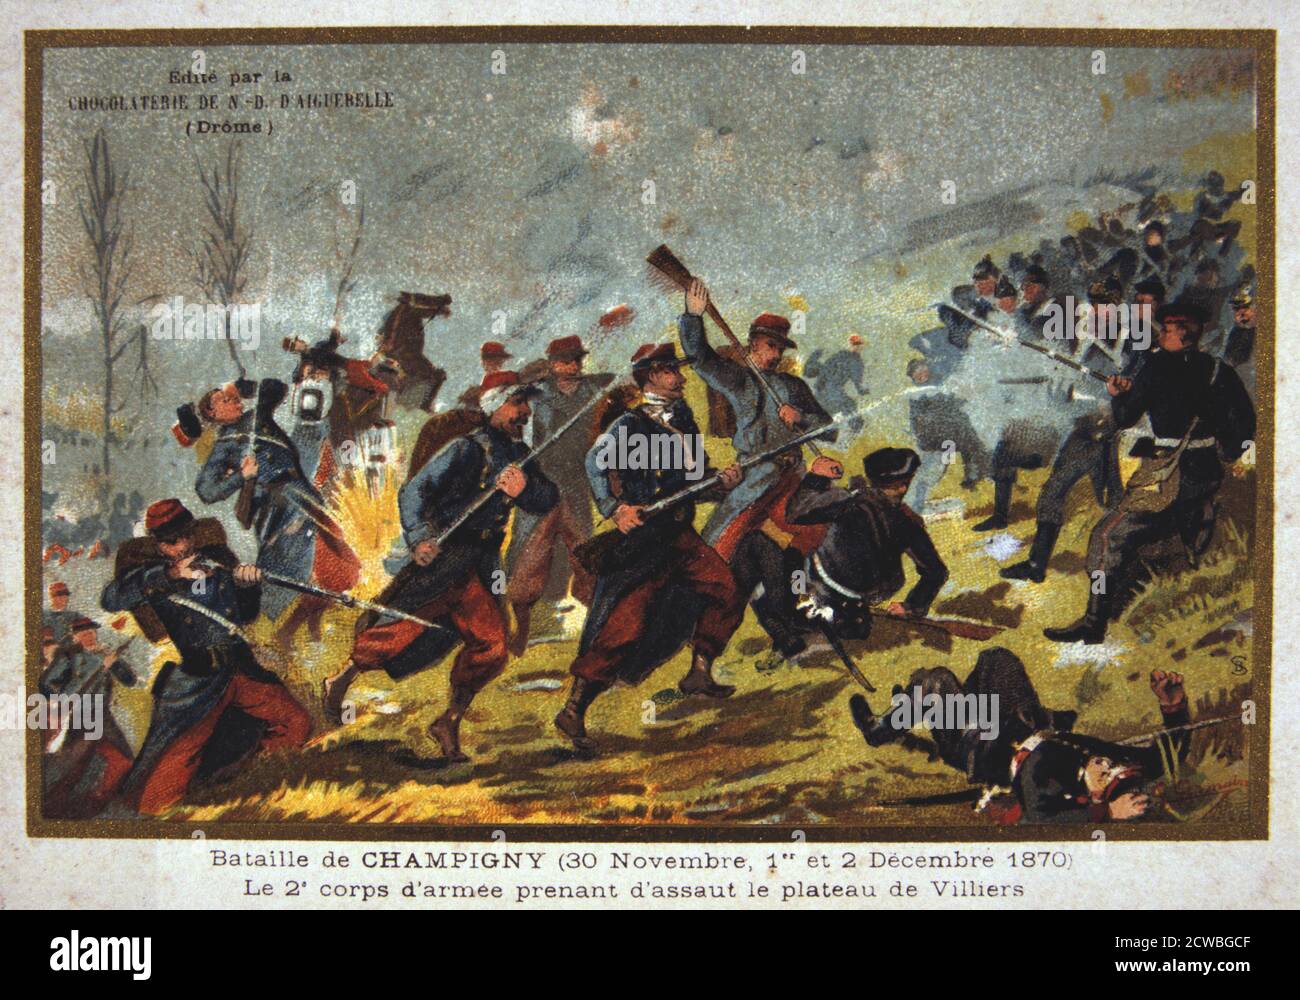 Schlacht von Champigny, Deutsch-Französischen Krieg, 30. November -2. Dezember 1870. Besser bekannt als die Schlacht von Villiers, die Kämpfe bei Champigny war Teil eines erfolglosen Versuch von der Französischen durch die Preußischen Linien während der Belagerung von Paris. Aus einer privaten Sammlung. Stockfoto